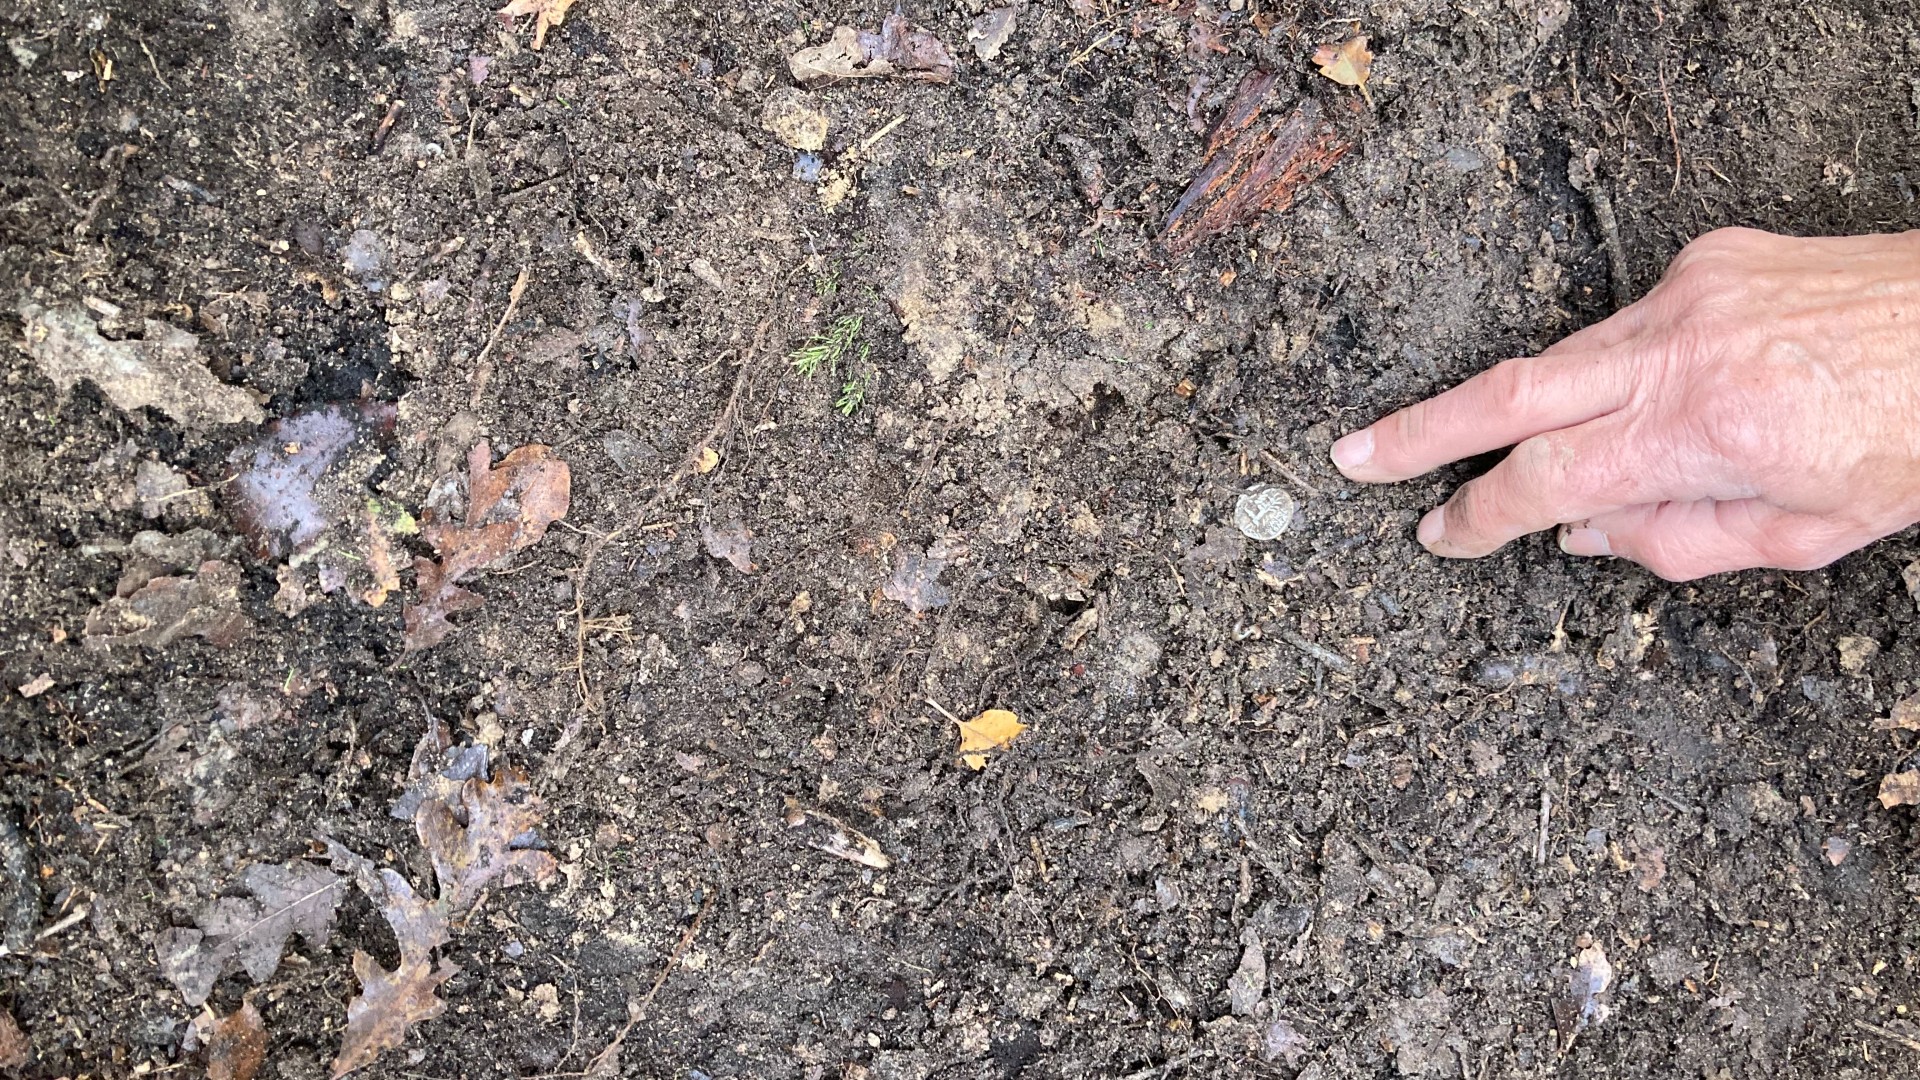 Hier sehen wir eine Hand, die auf eine kleine, runde, silberne römische Münze auf dem Lehmboden eines Waldes zeigt.